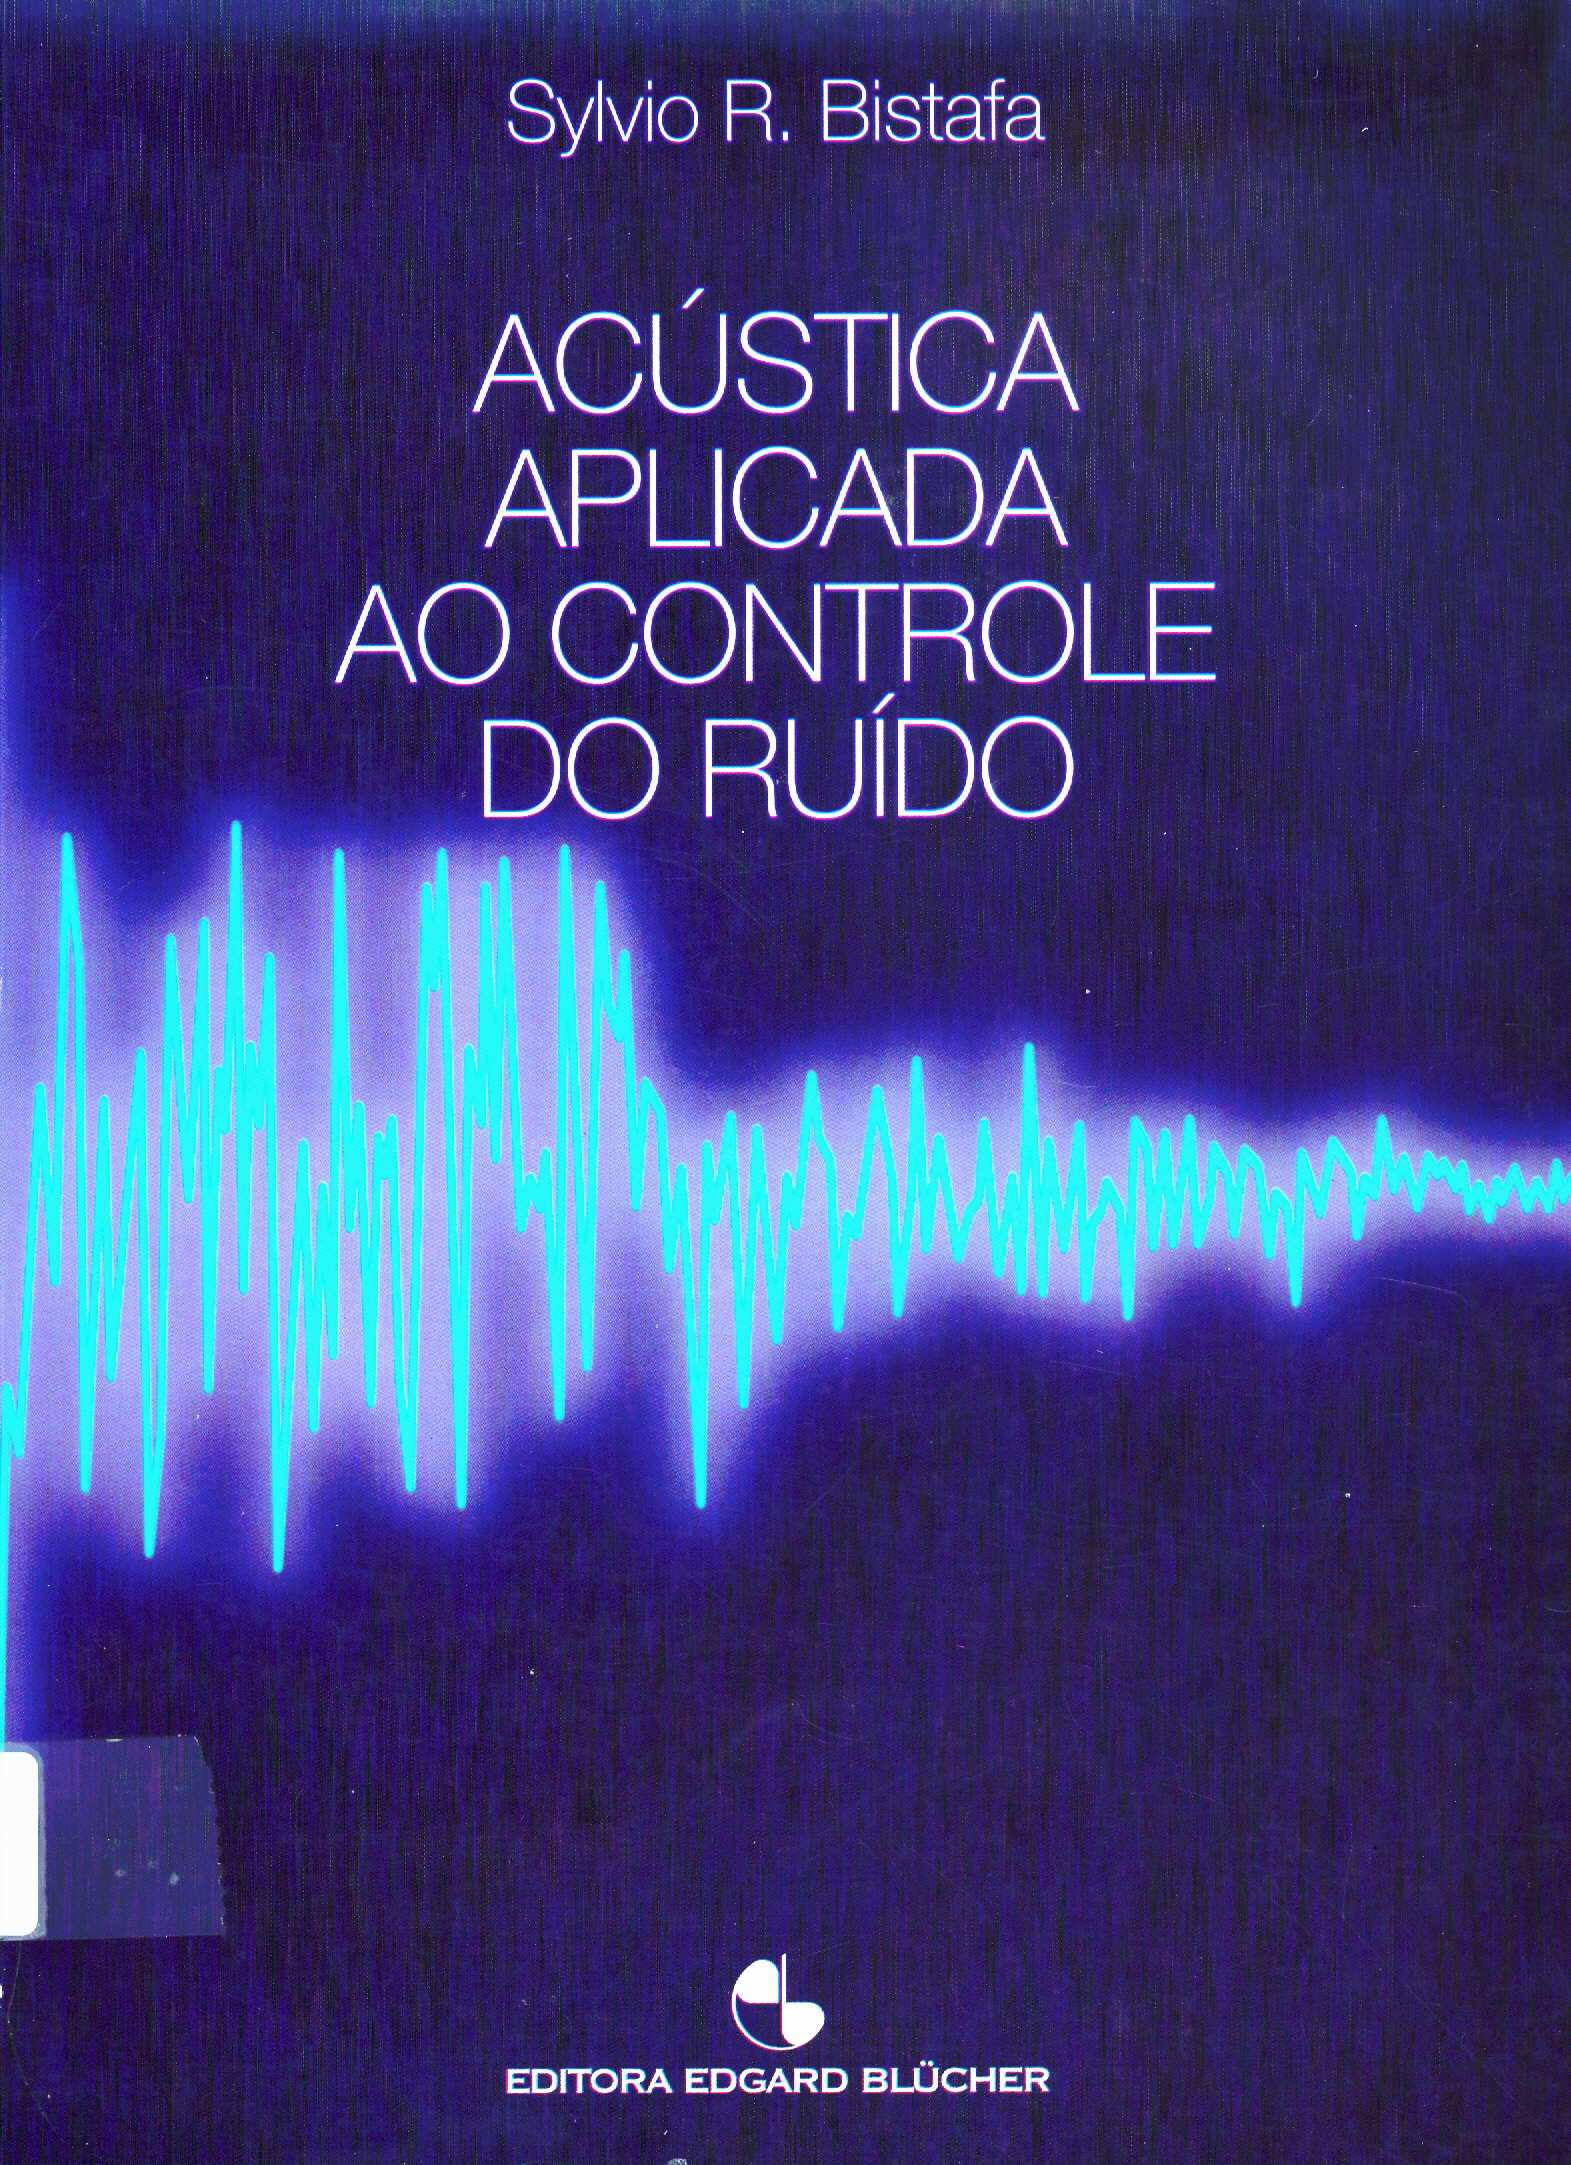 S.R. Bistafa Acústica aplicada ao controle do ruído (Editora Edgard Blücher, 2006) 2 - Conceitos fundamentais do som 3 - Nivel logaritmico e espectro sonoro 4 - Mecanismo